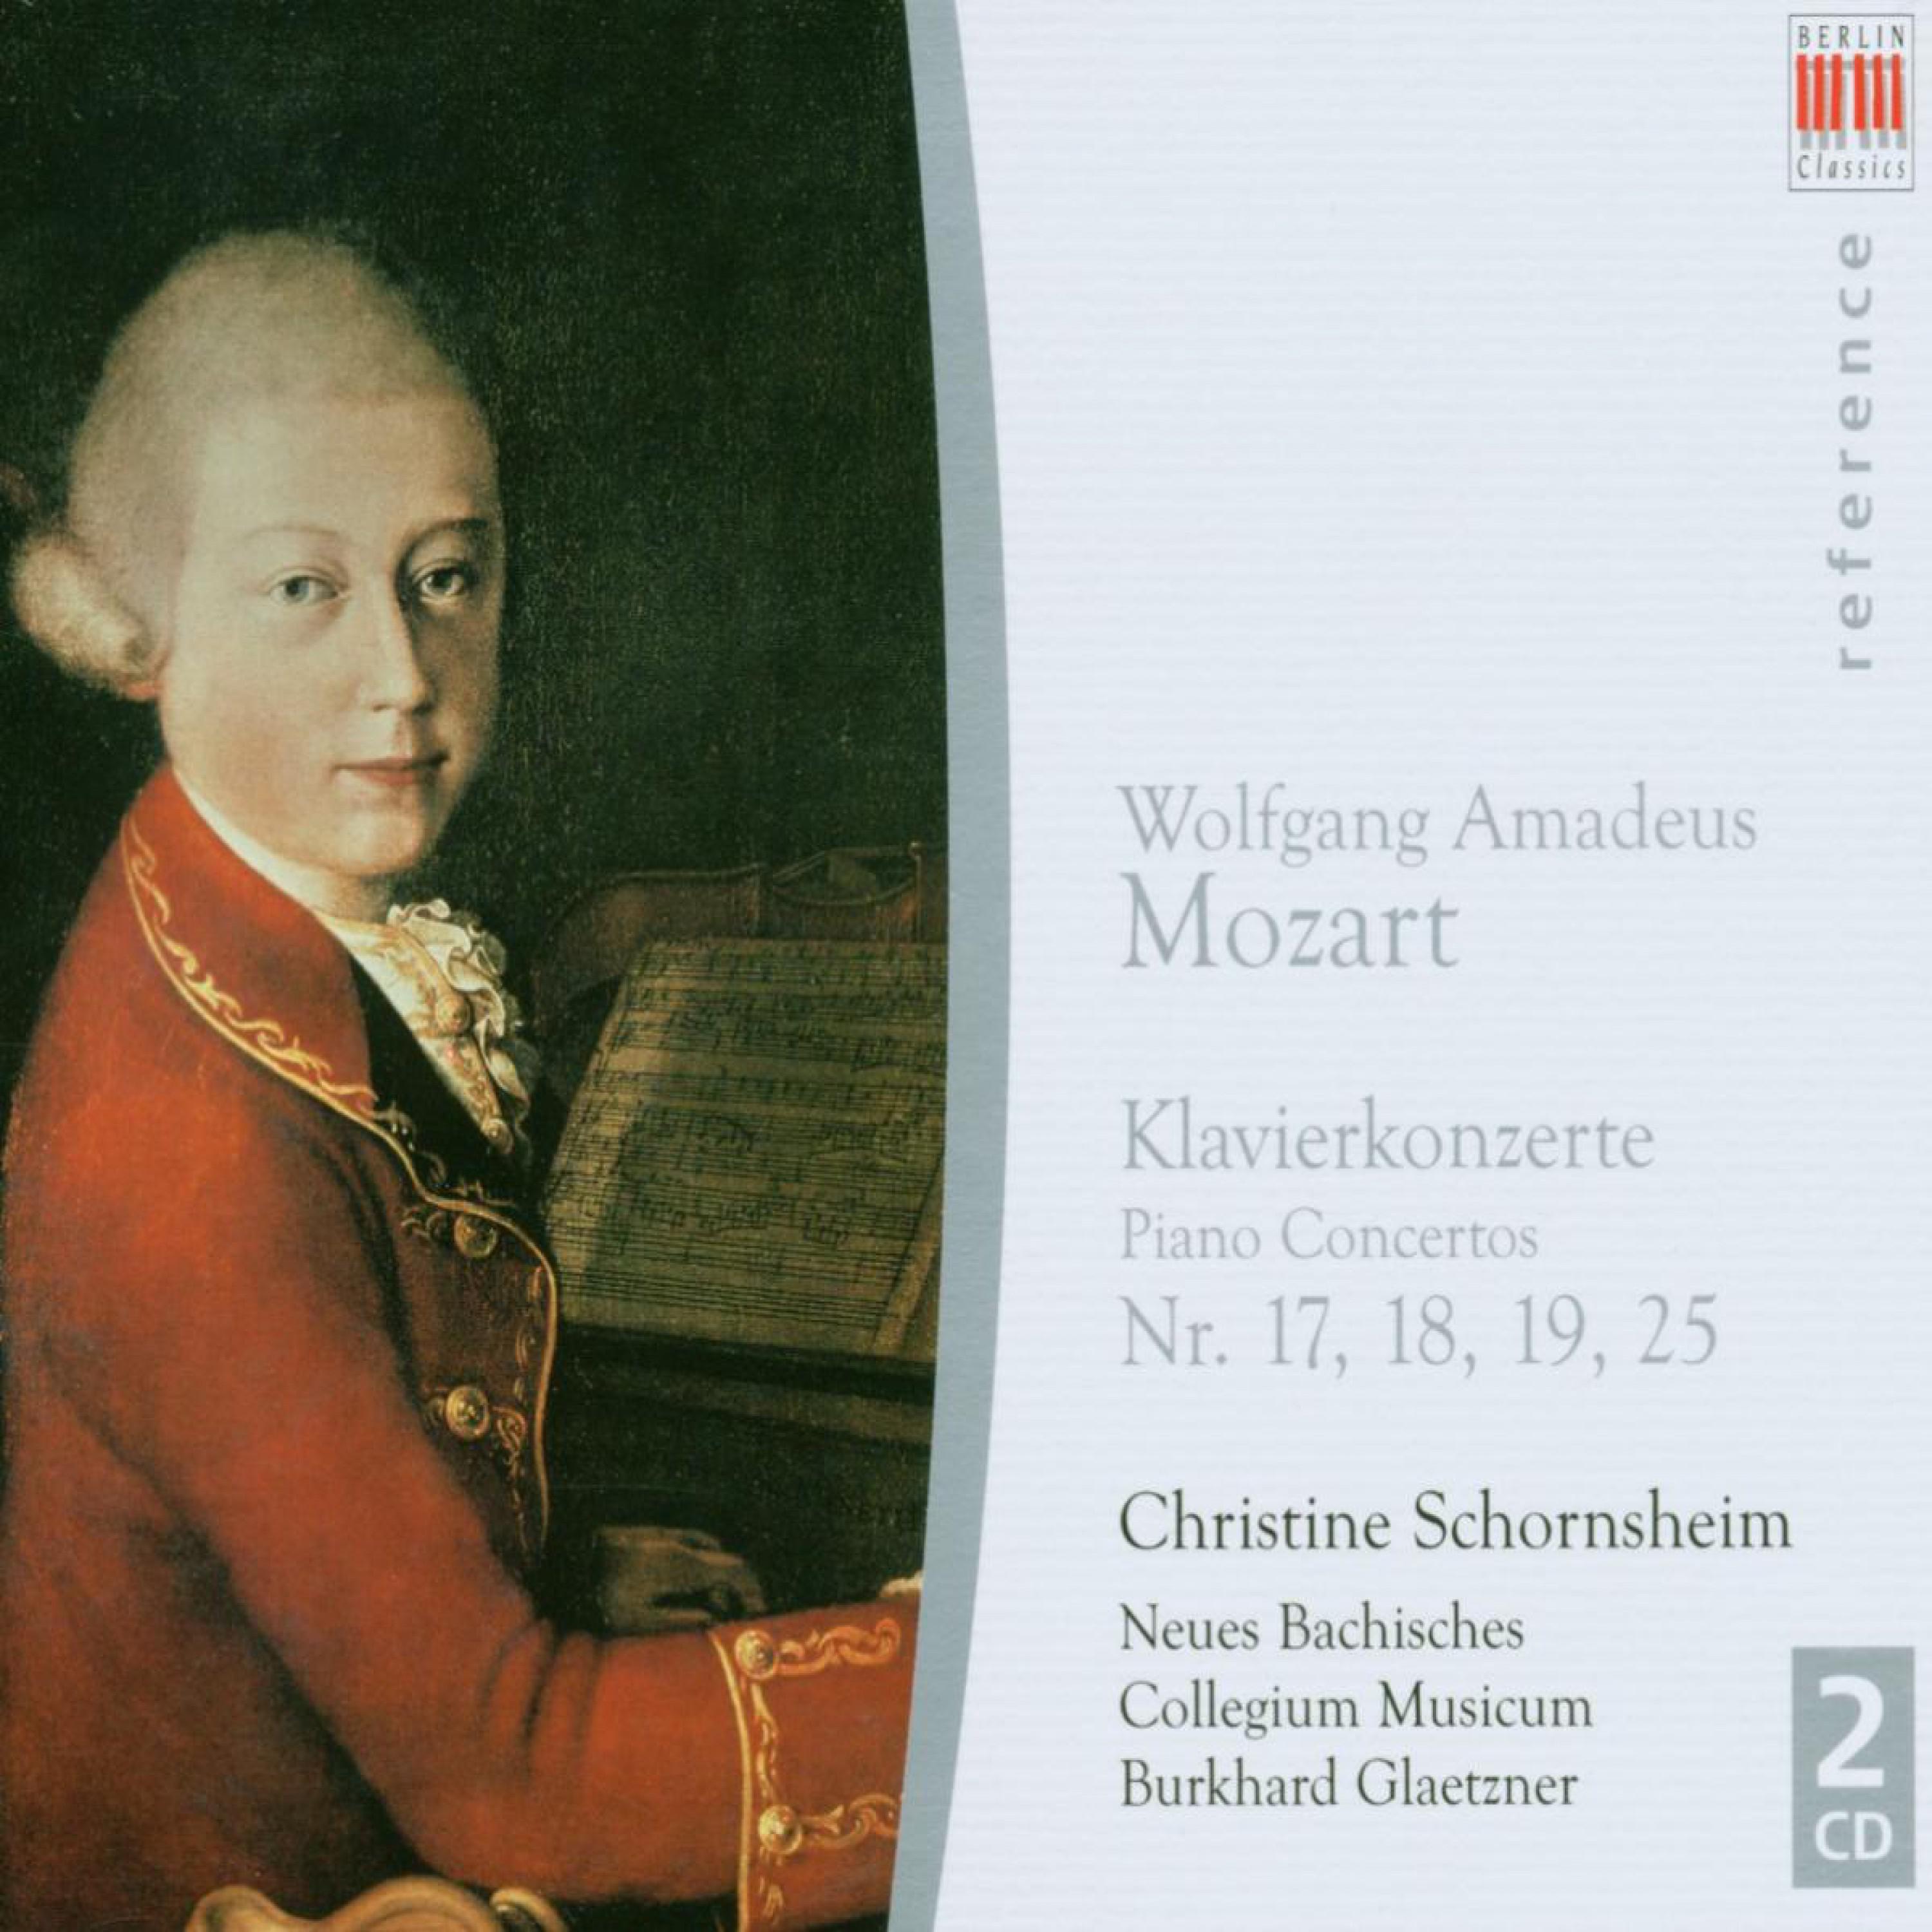 Wolfgang Amadeus Mozart: Piano Concertos Nos. 17, 18, 19, 25 (Schornsheim, New Bach Musicum Collegium Leipzig, Glaetzner)